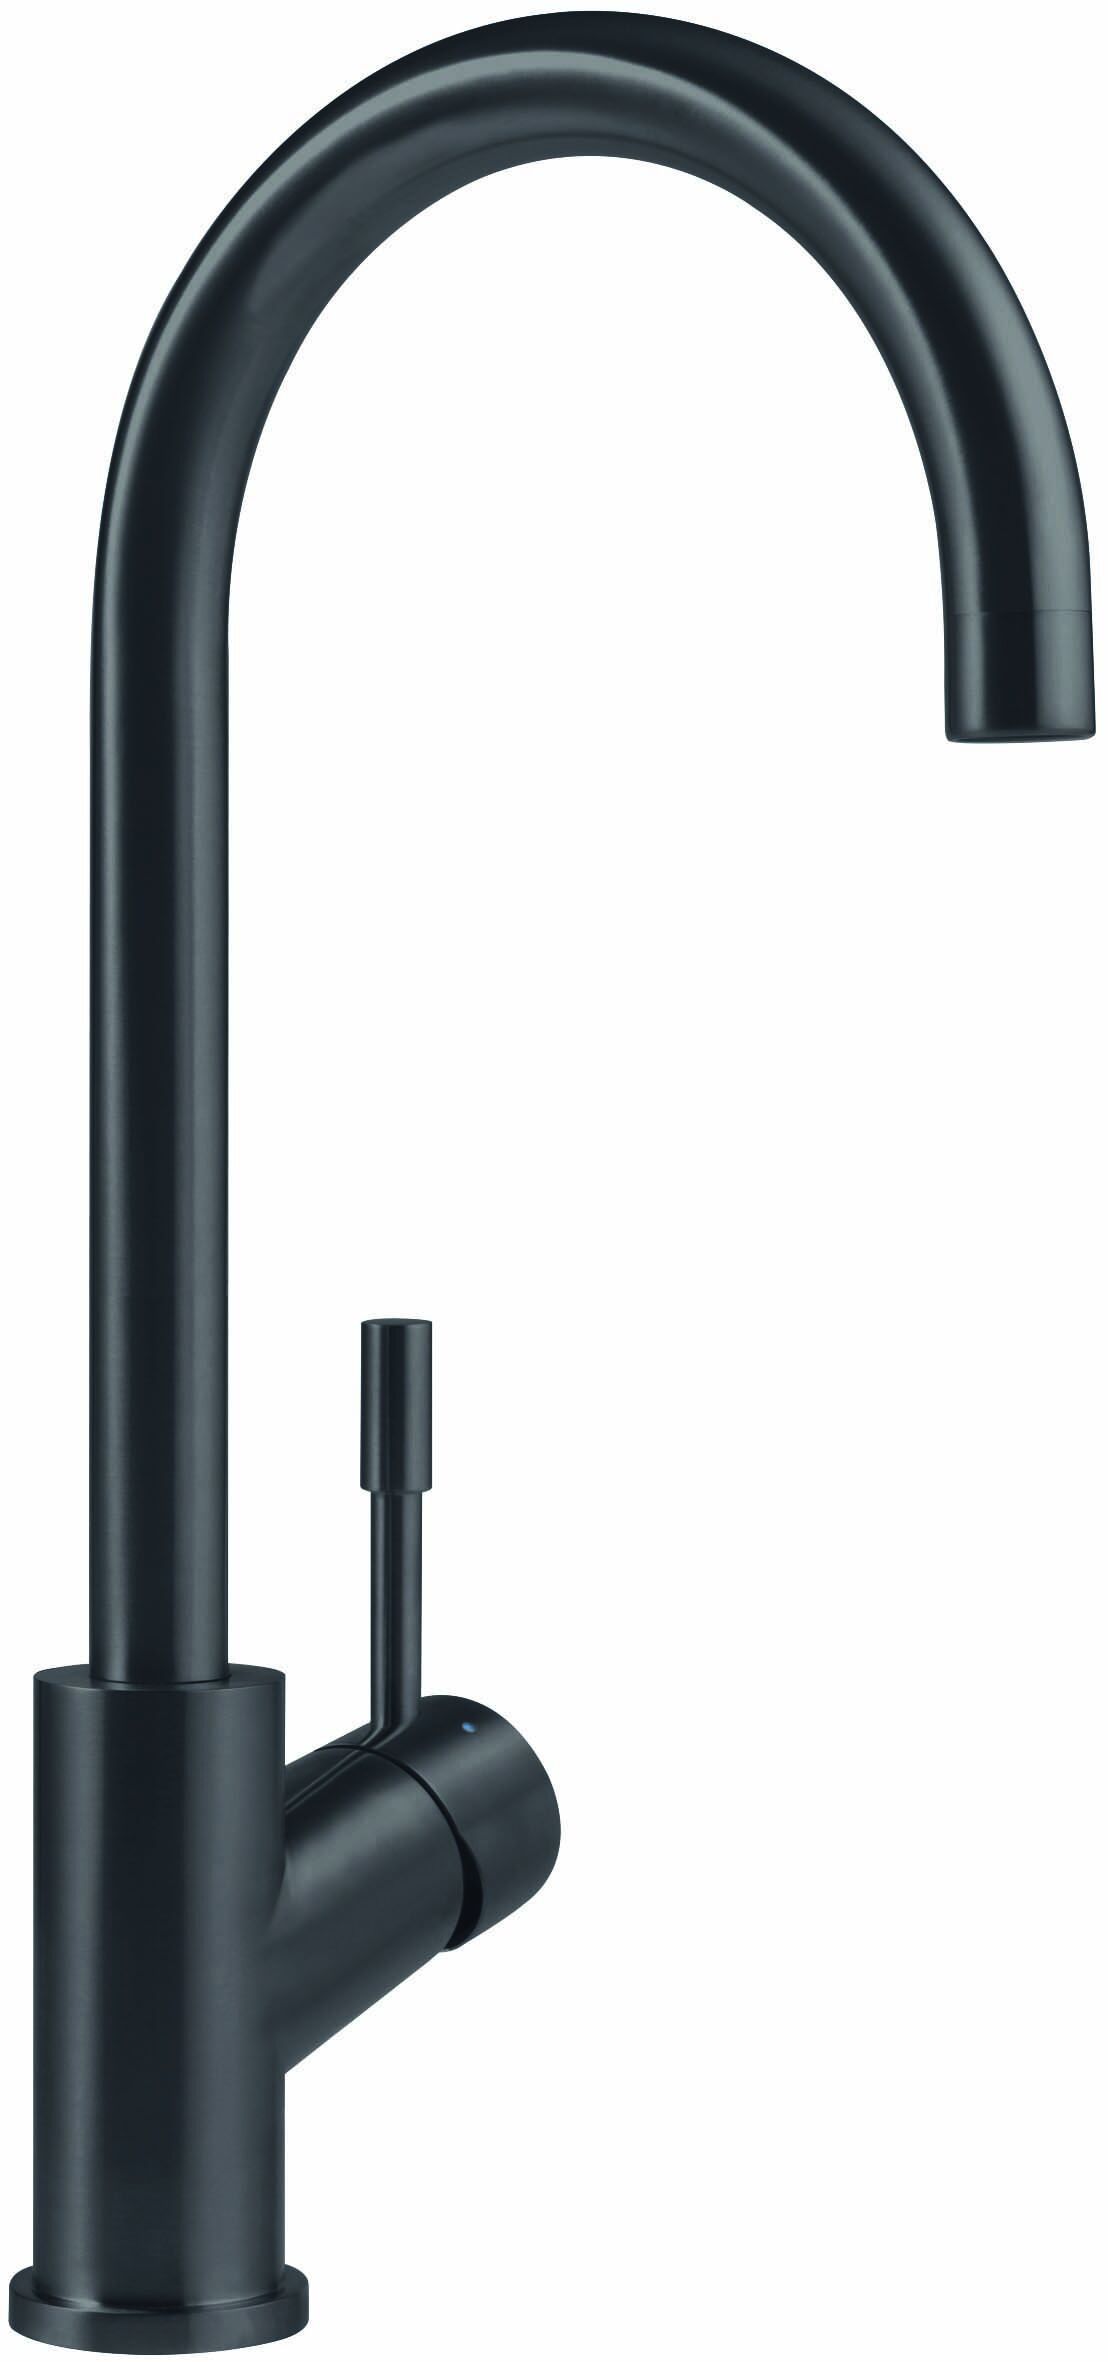 Villeroy und Boch Küchenarmatur Umbrella 92530005 16 l/min, flexible Anschlussschläuche, anthracite